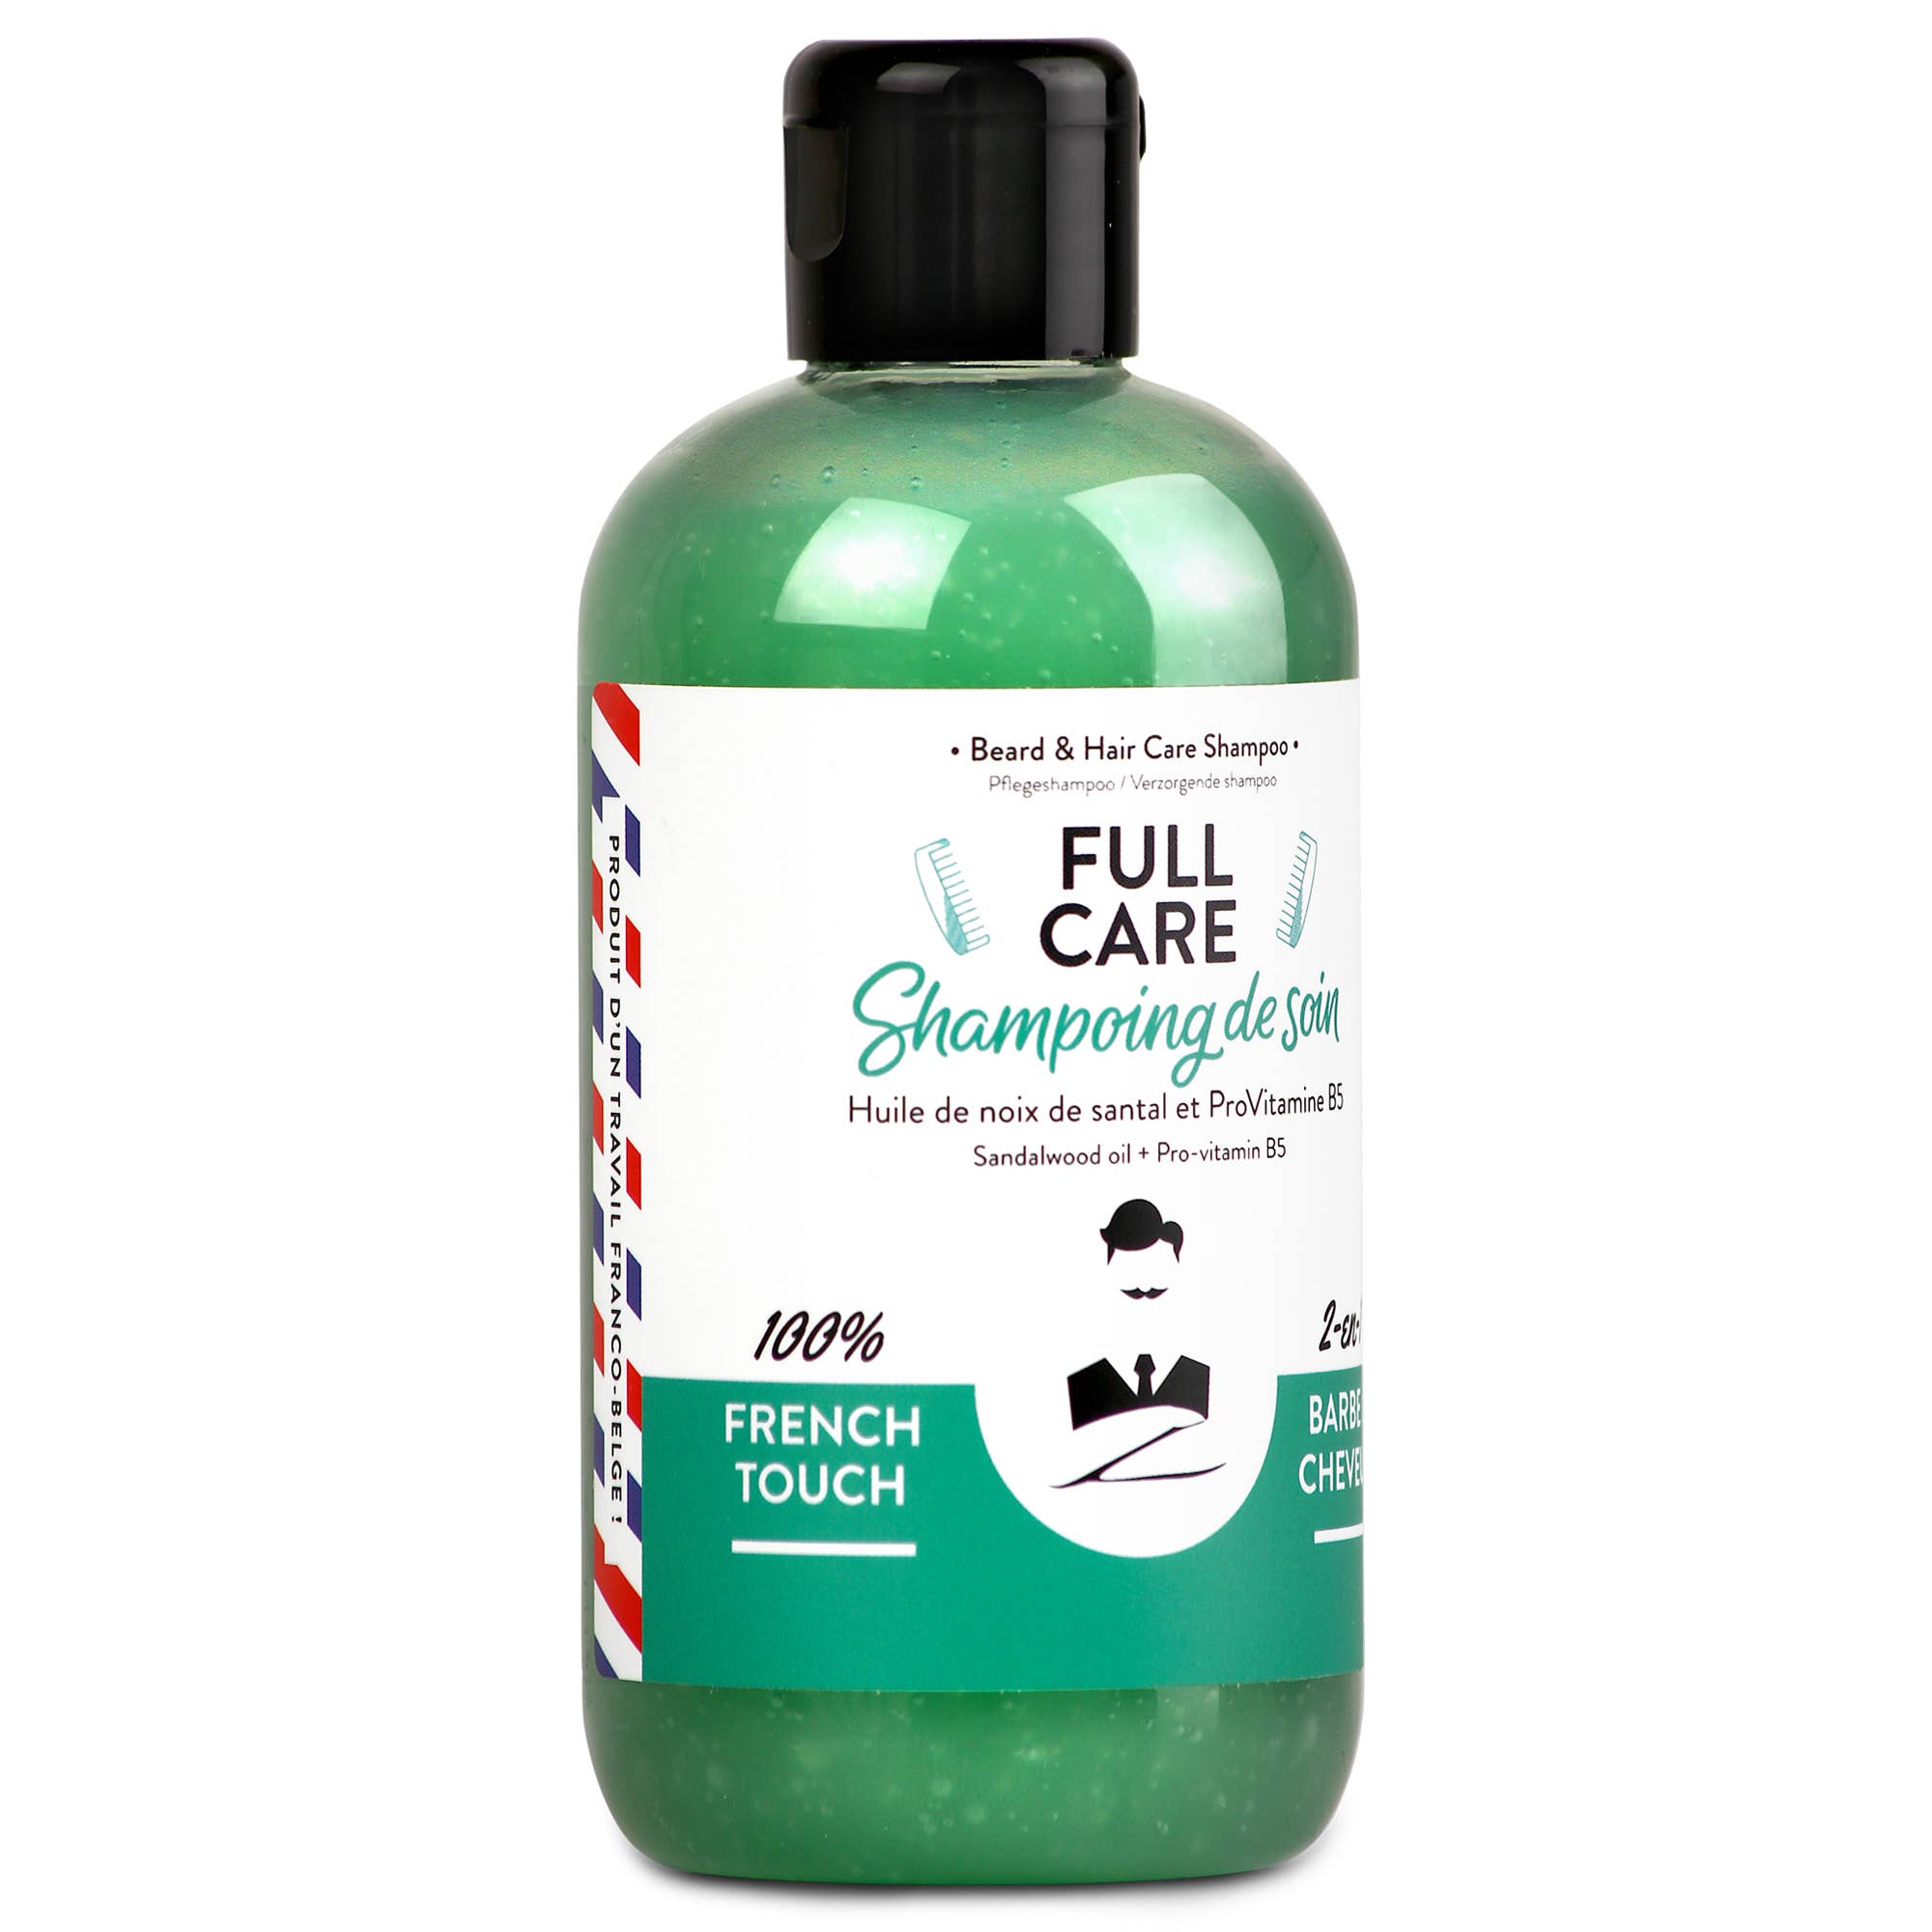 Full Care Shampoo - Monsieur Barbier